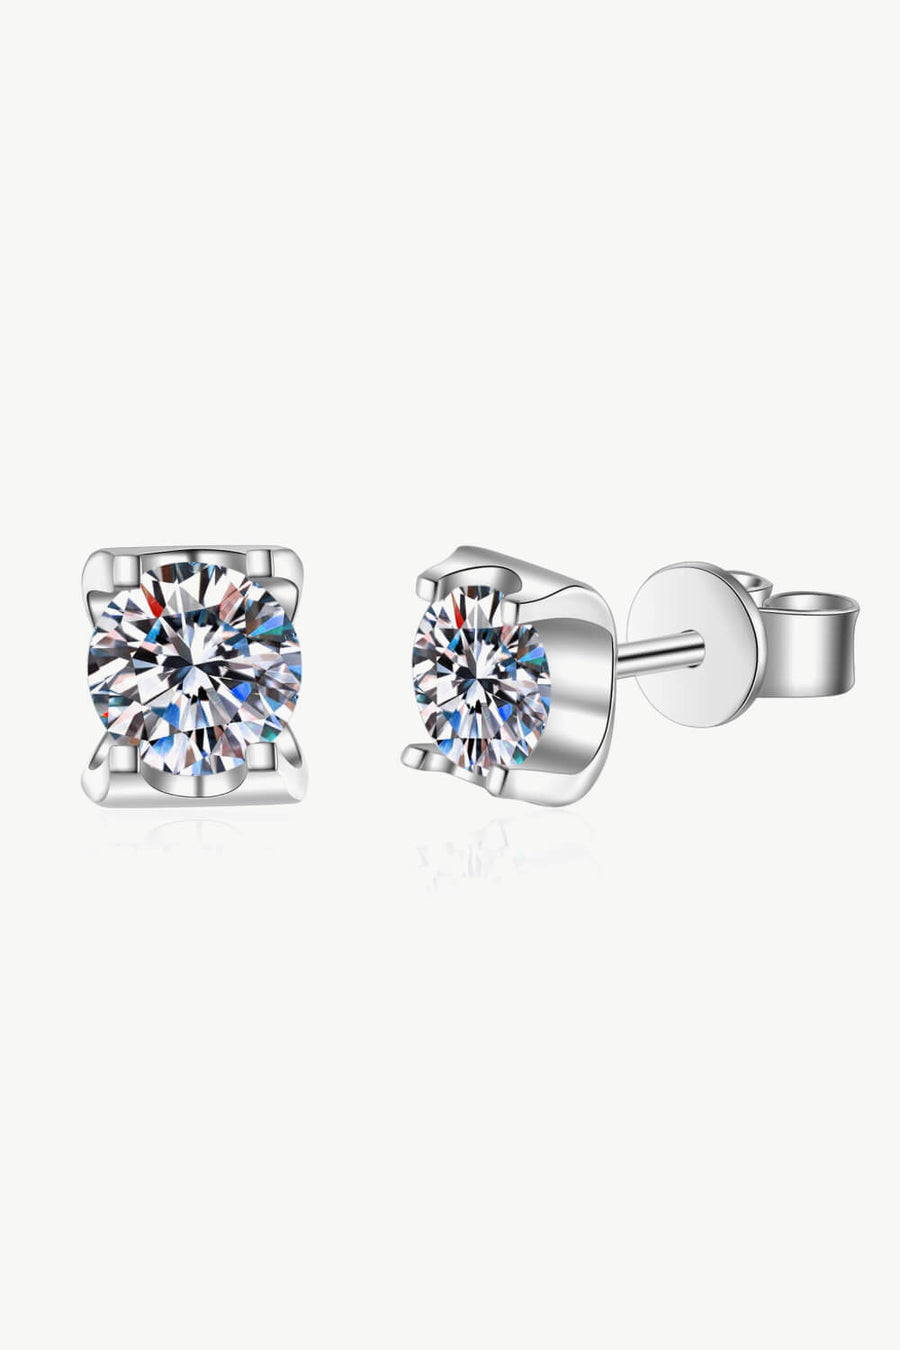 Best Diamond Earrings Jewelry Gifts for Women | 1 Carat Diamond Stud Earrings - Weekend Meetup | MASON New York